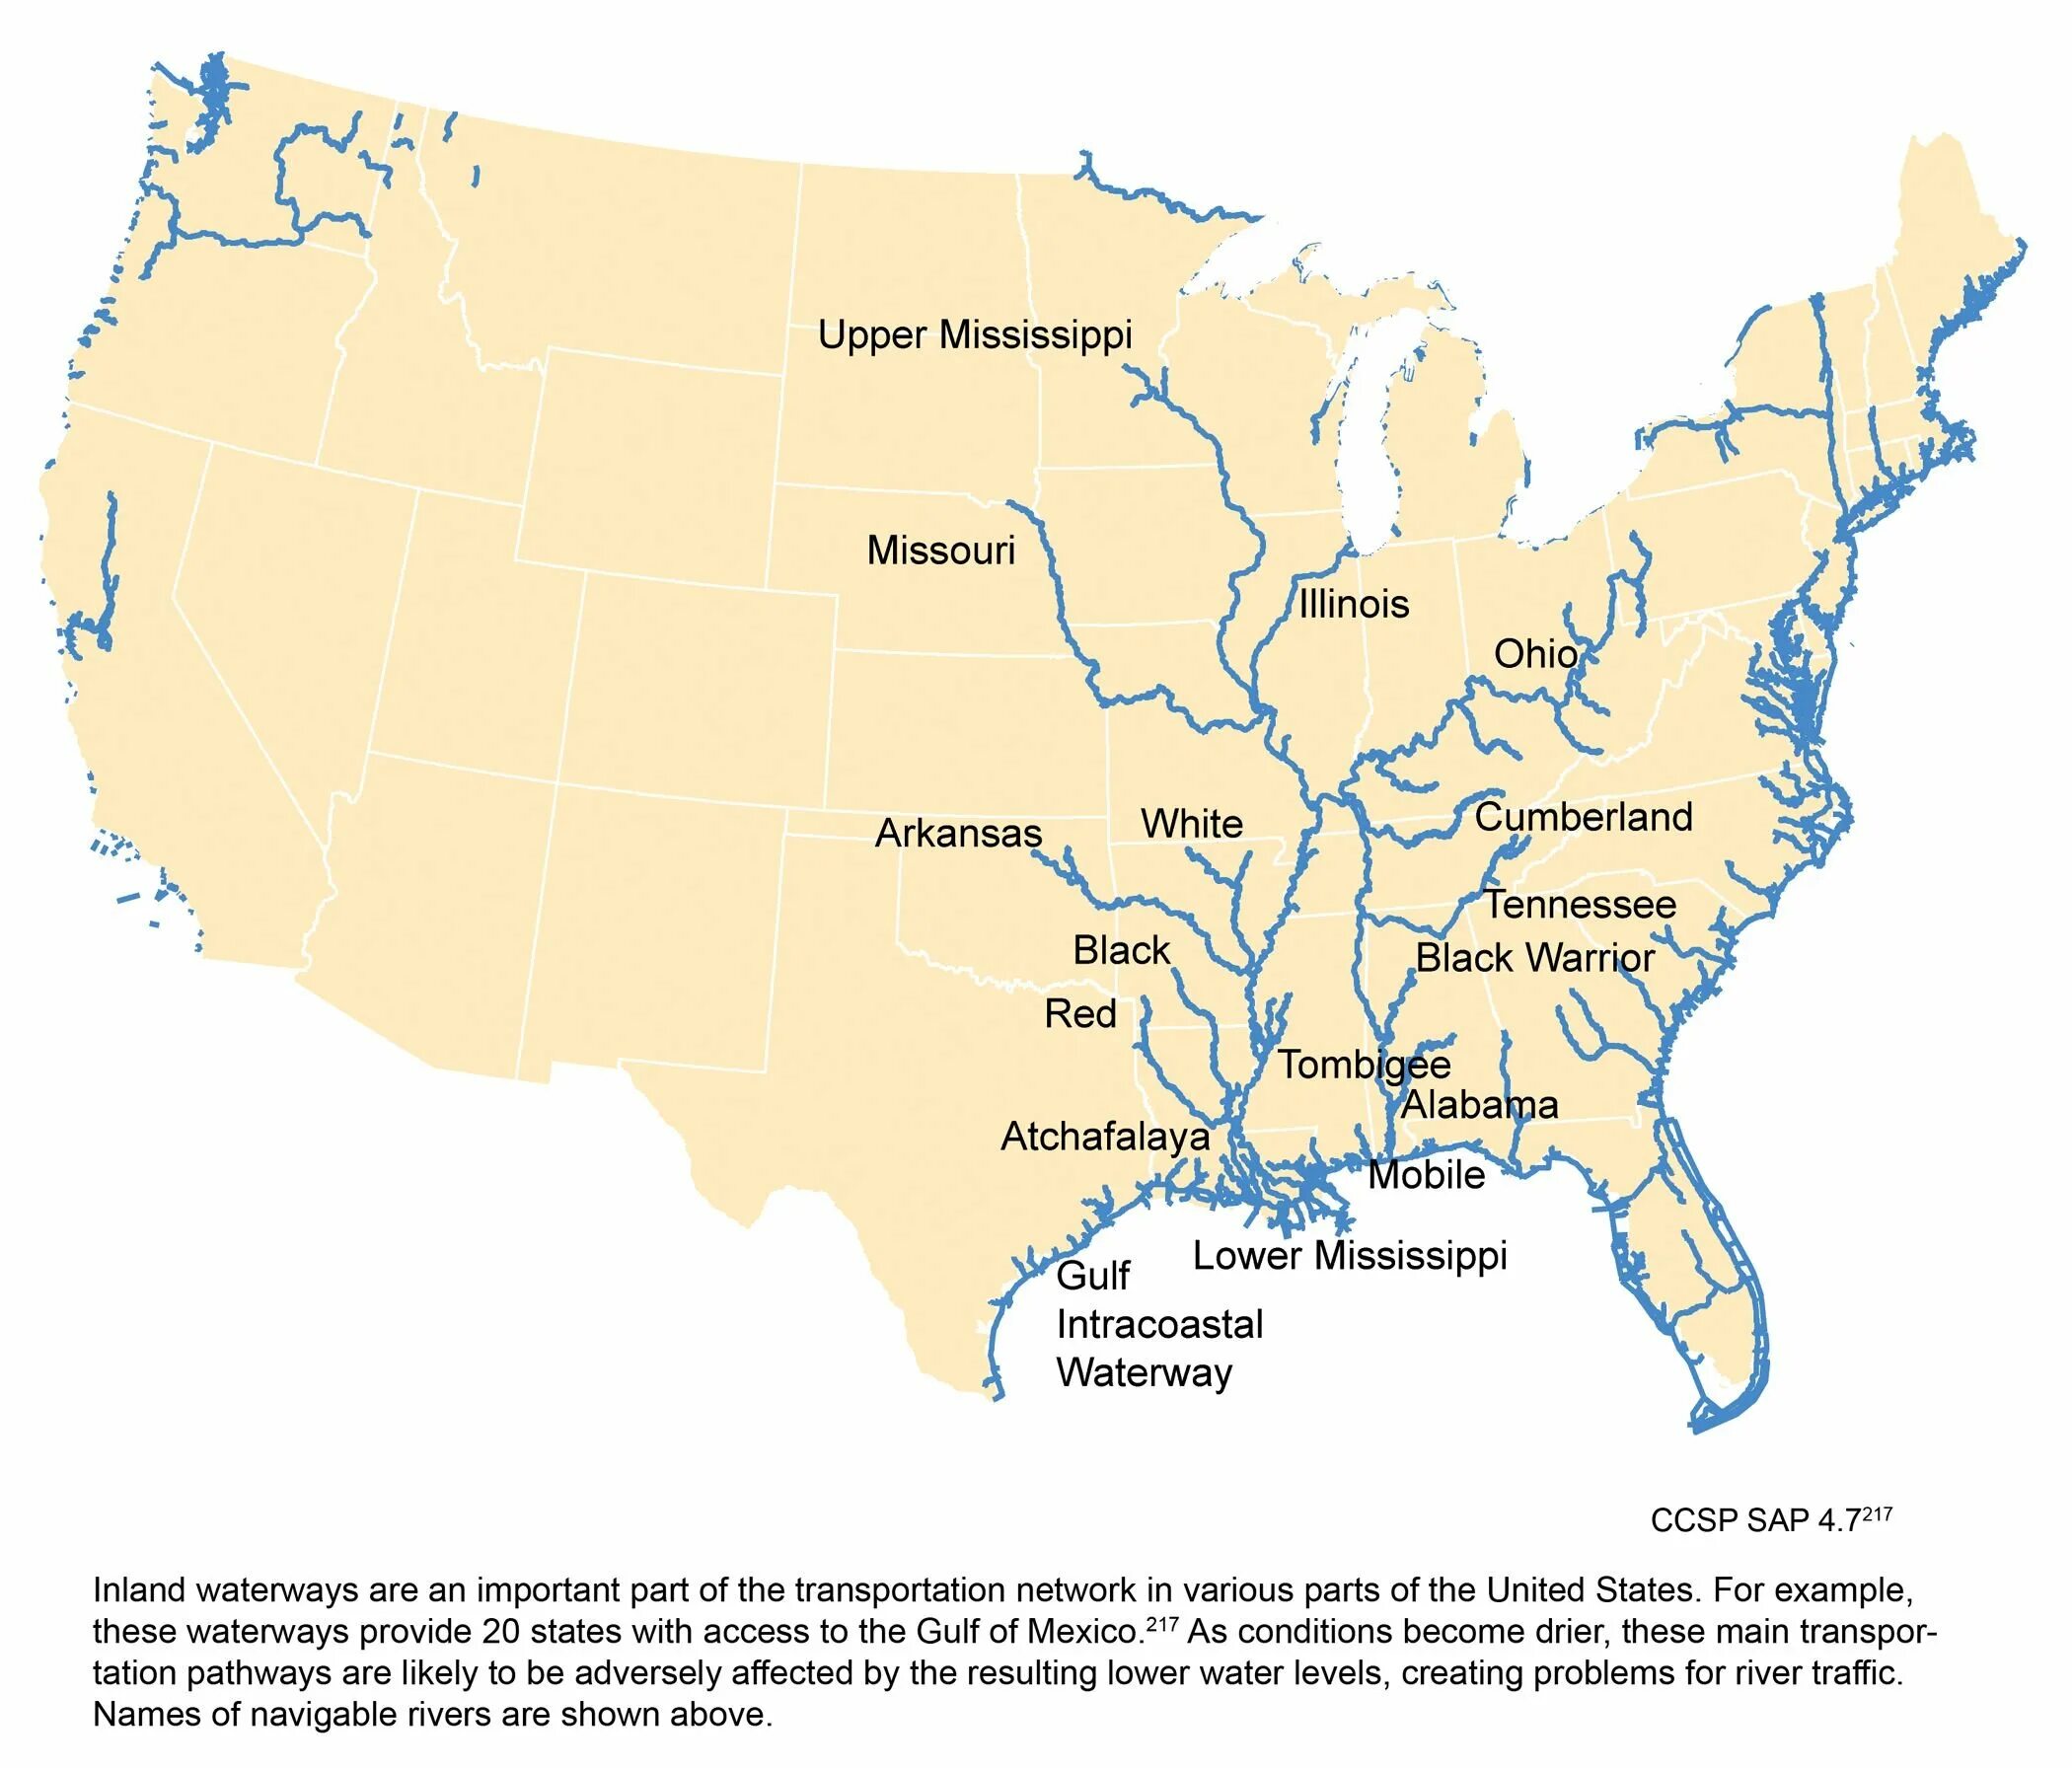 Река Миссисипи на карте США. Реки Миссисипи и Миссури на карте Америки. Река Миссисипи на карте Северной Америки. Река Миссисипи и Миссури на карте. Какая река северной америки является притоком миссисипи